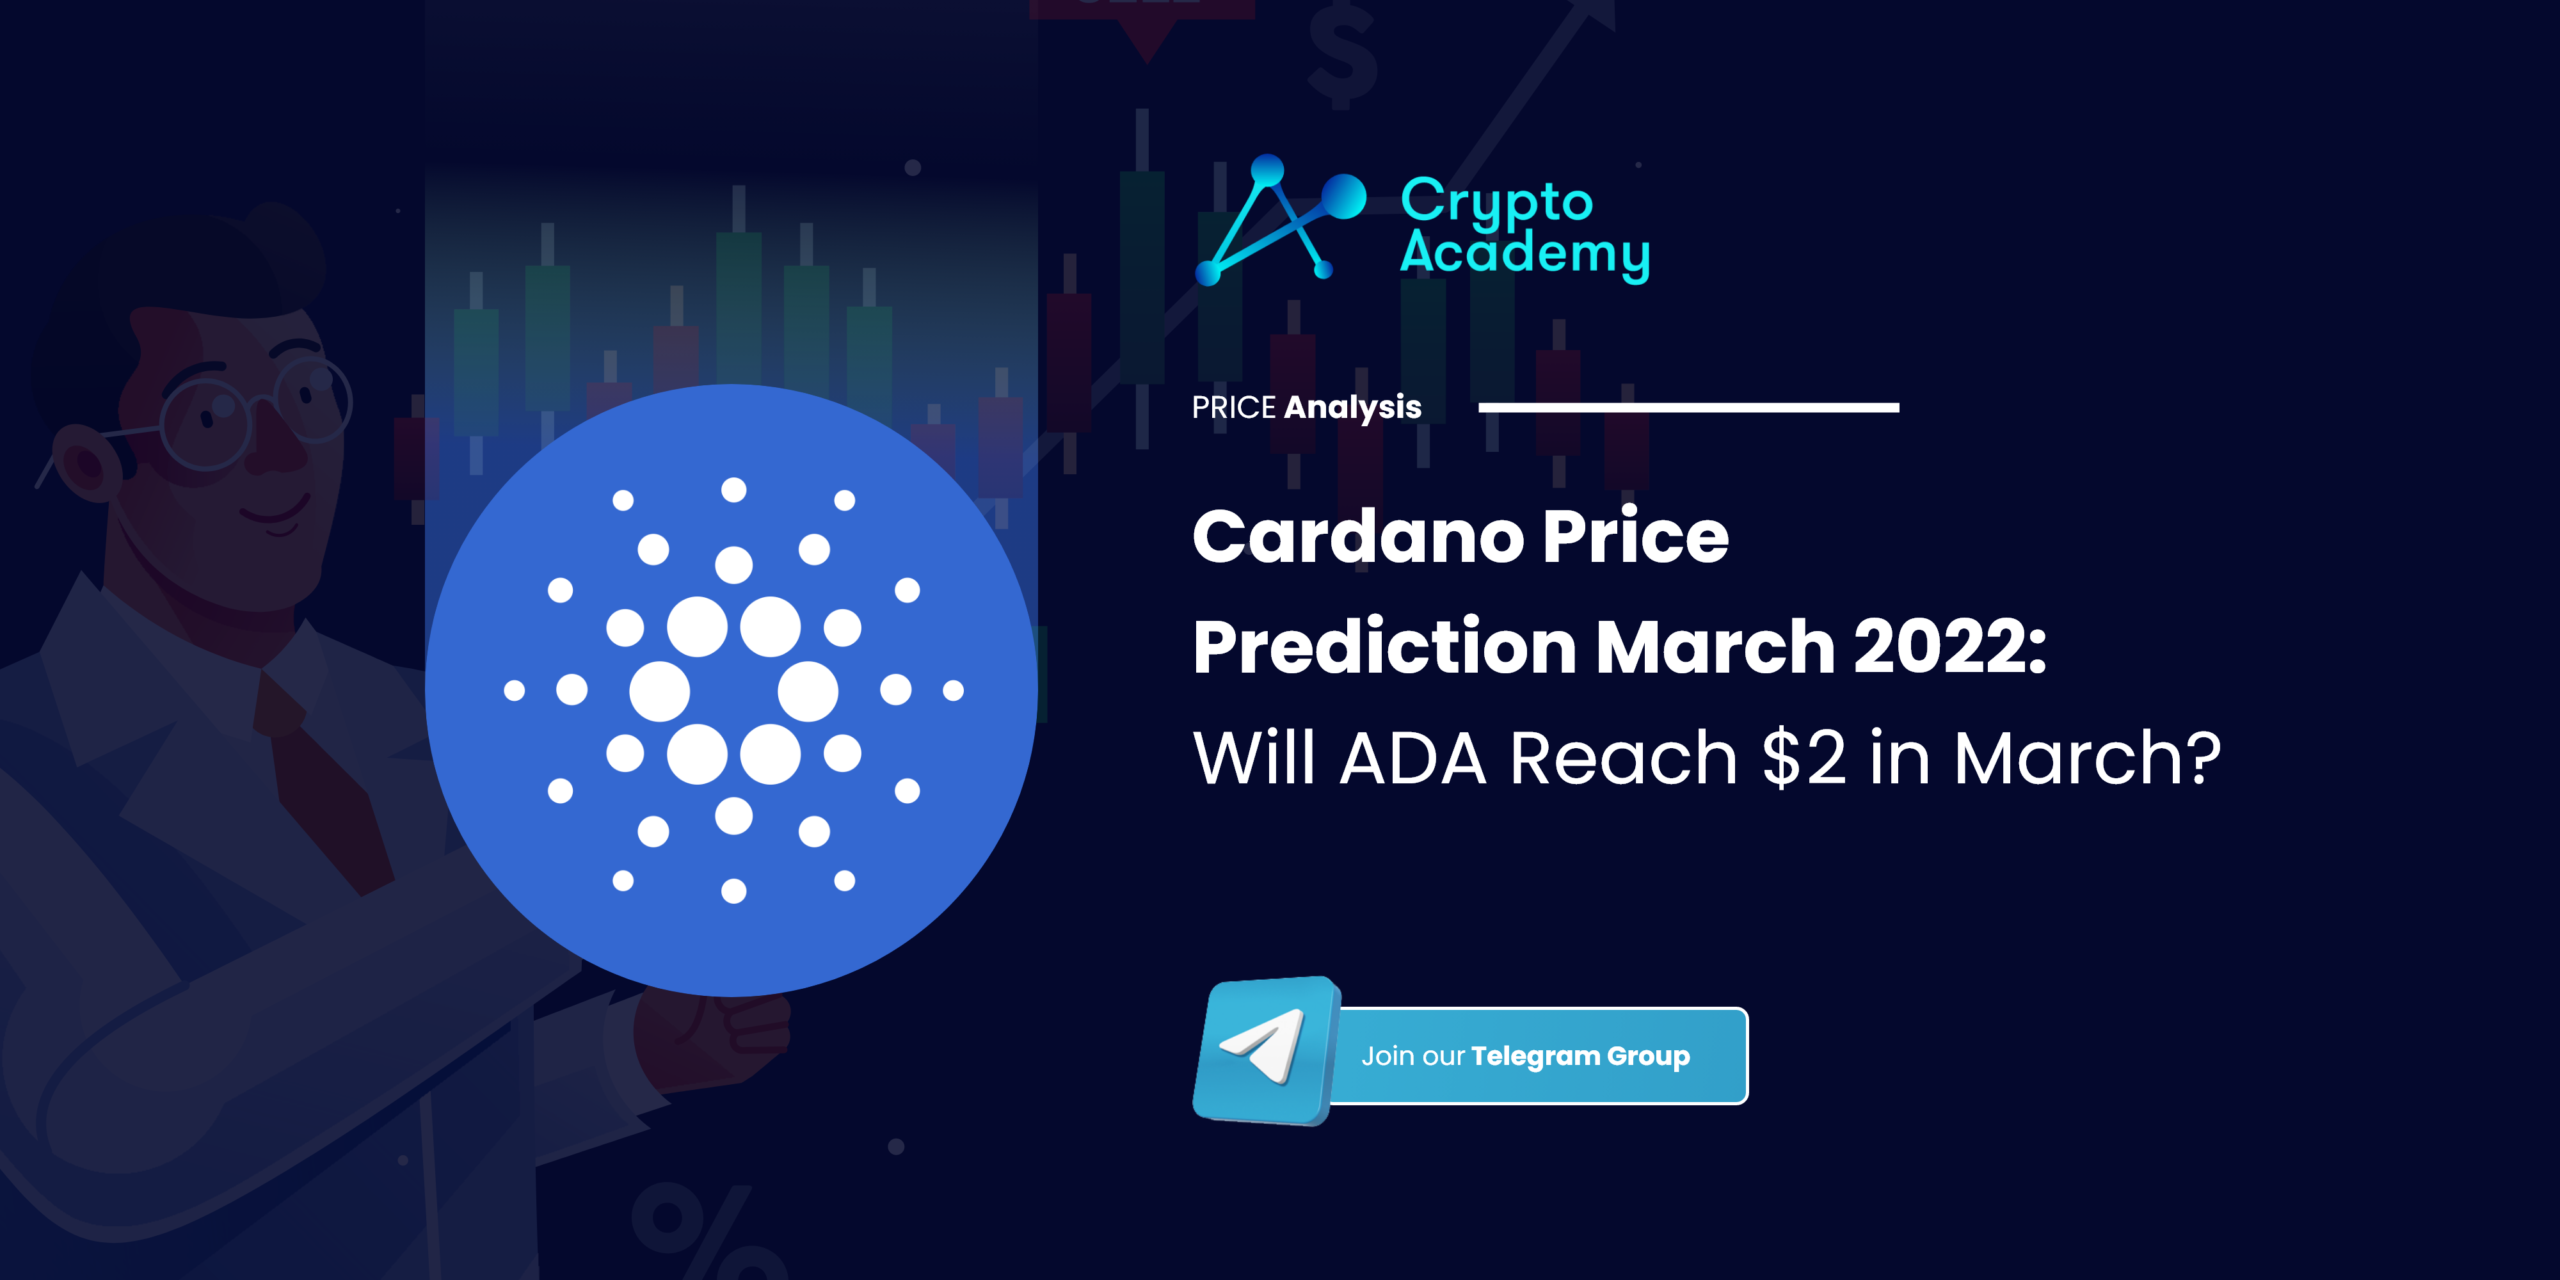 Cardano Price Prediction March 2022: Will ADA Reach $2 in March?